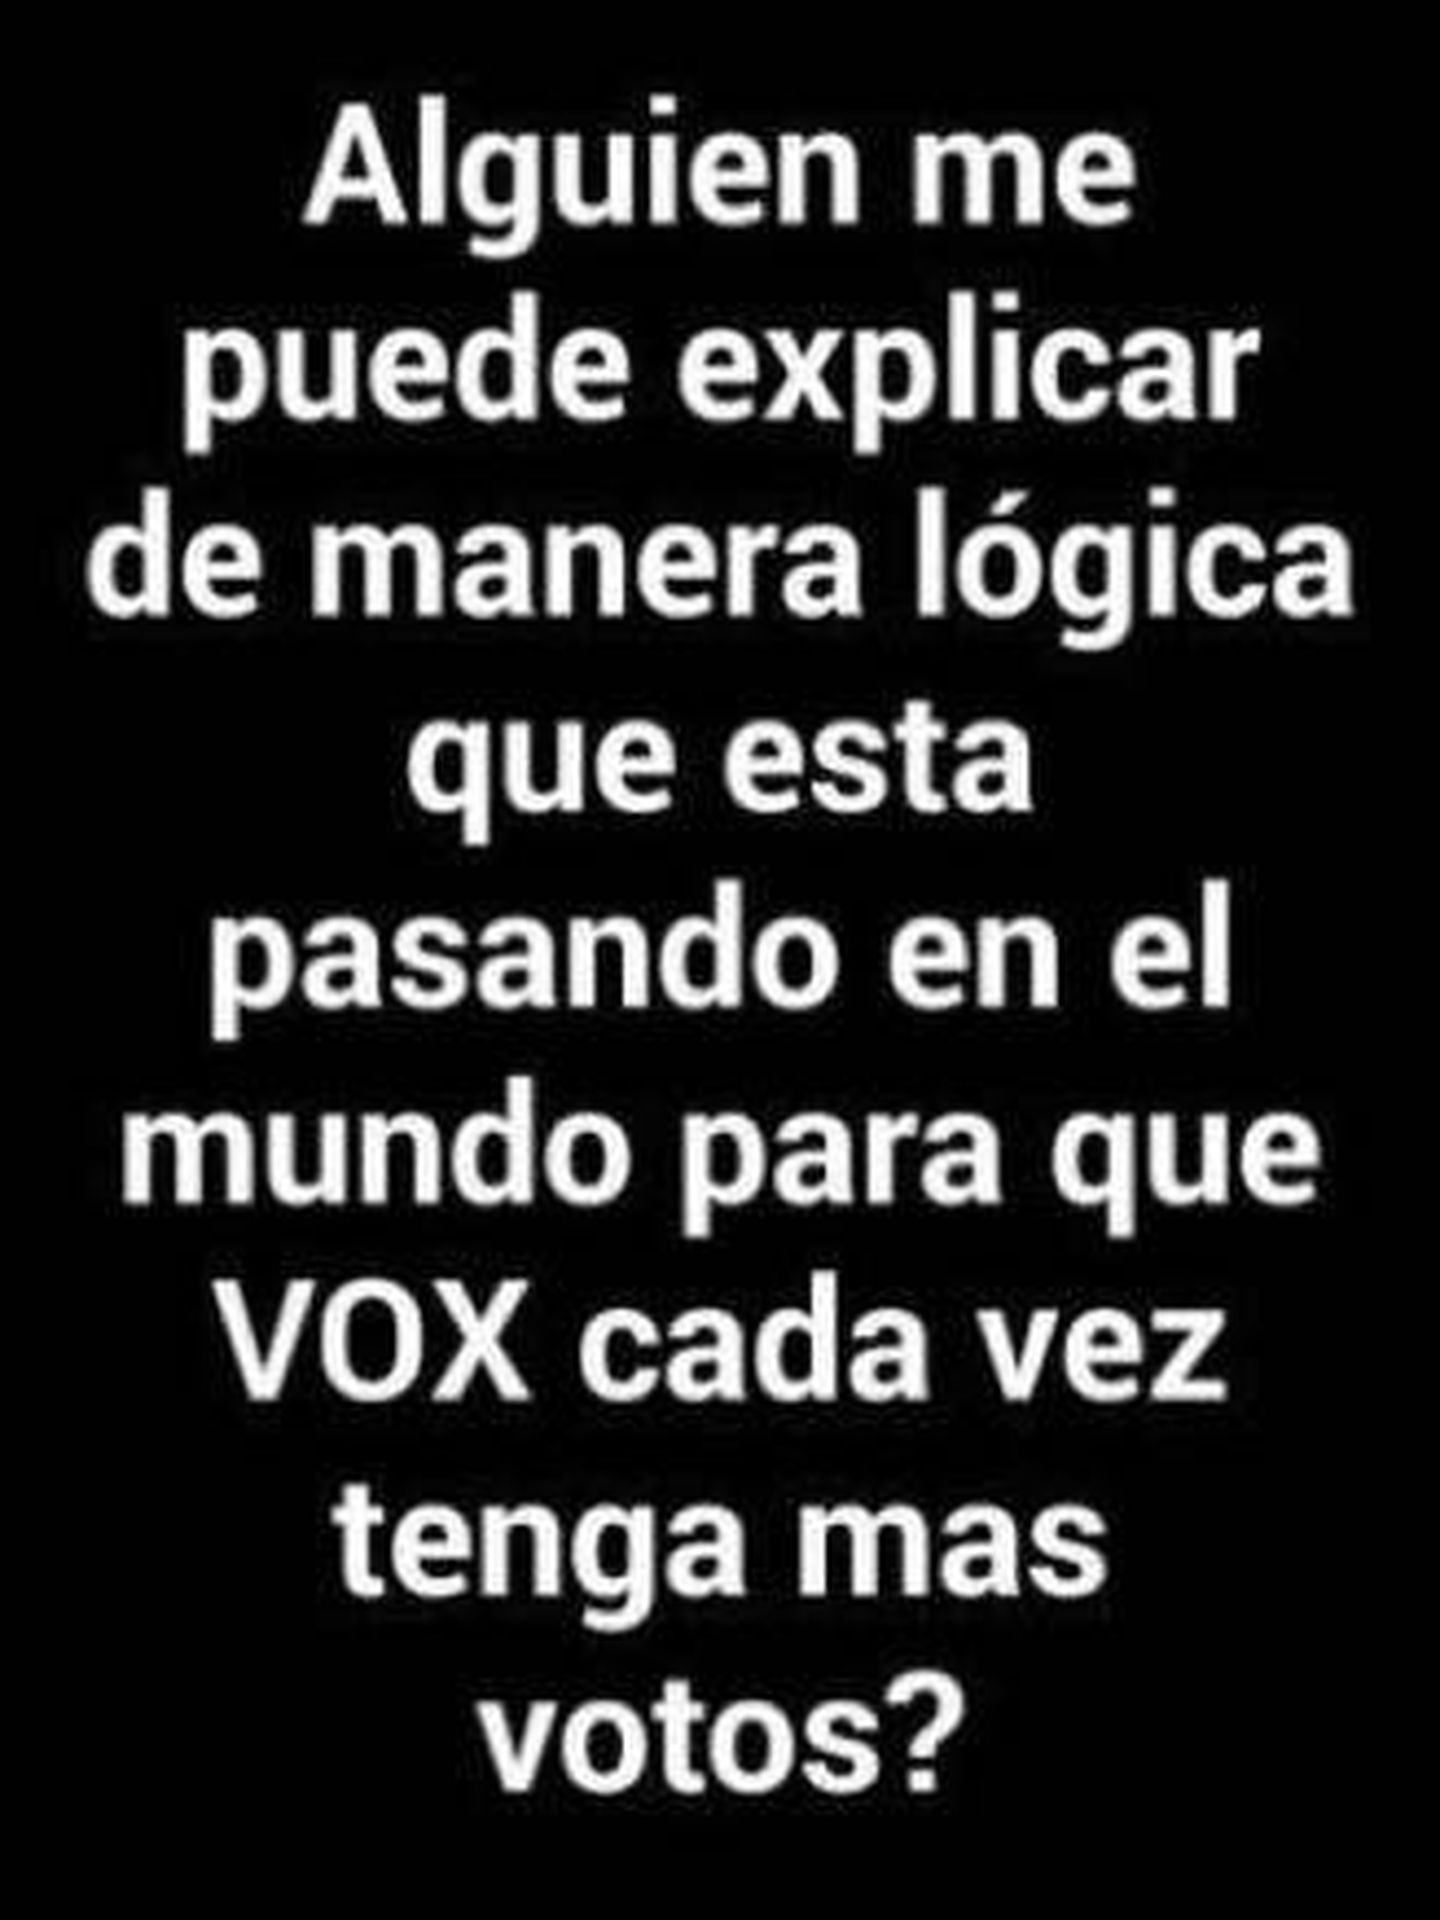 Mensaje de Carla Vigo contra VOX. (Instagram)